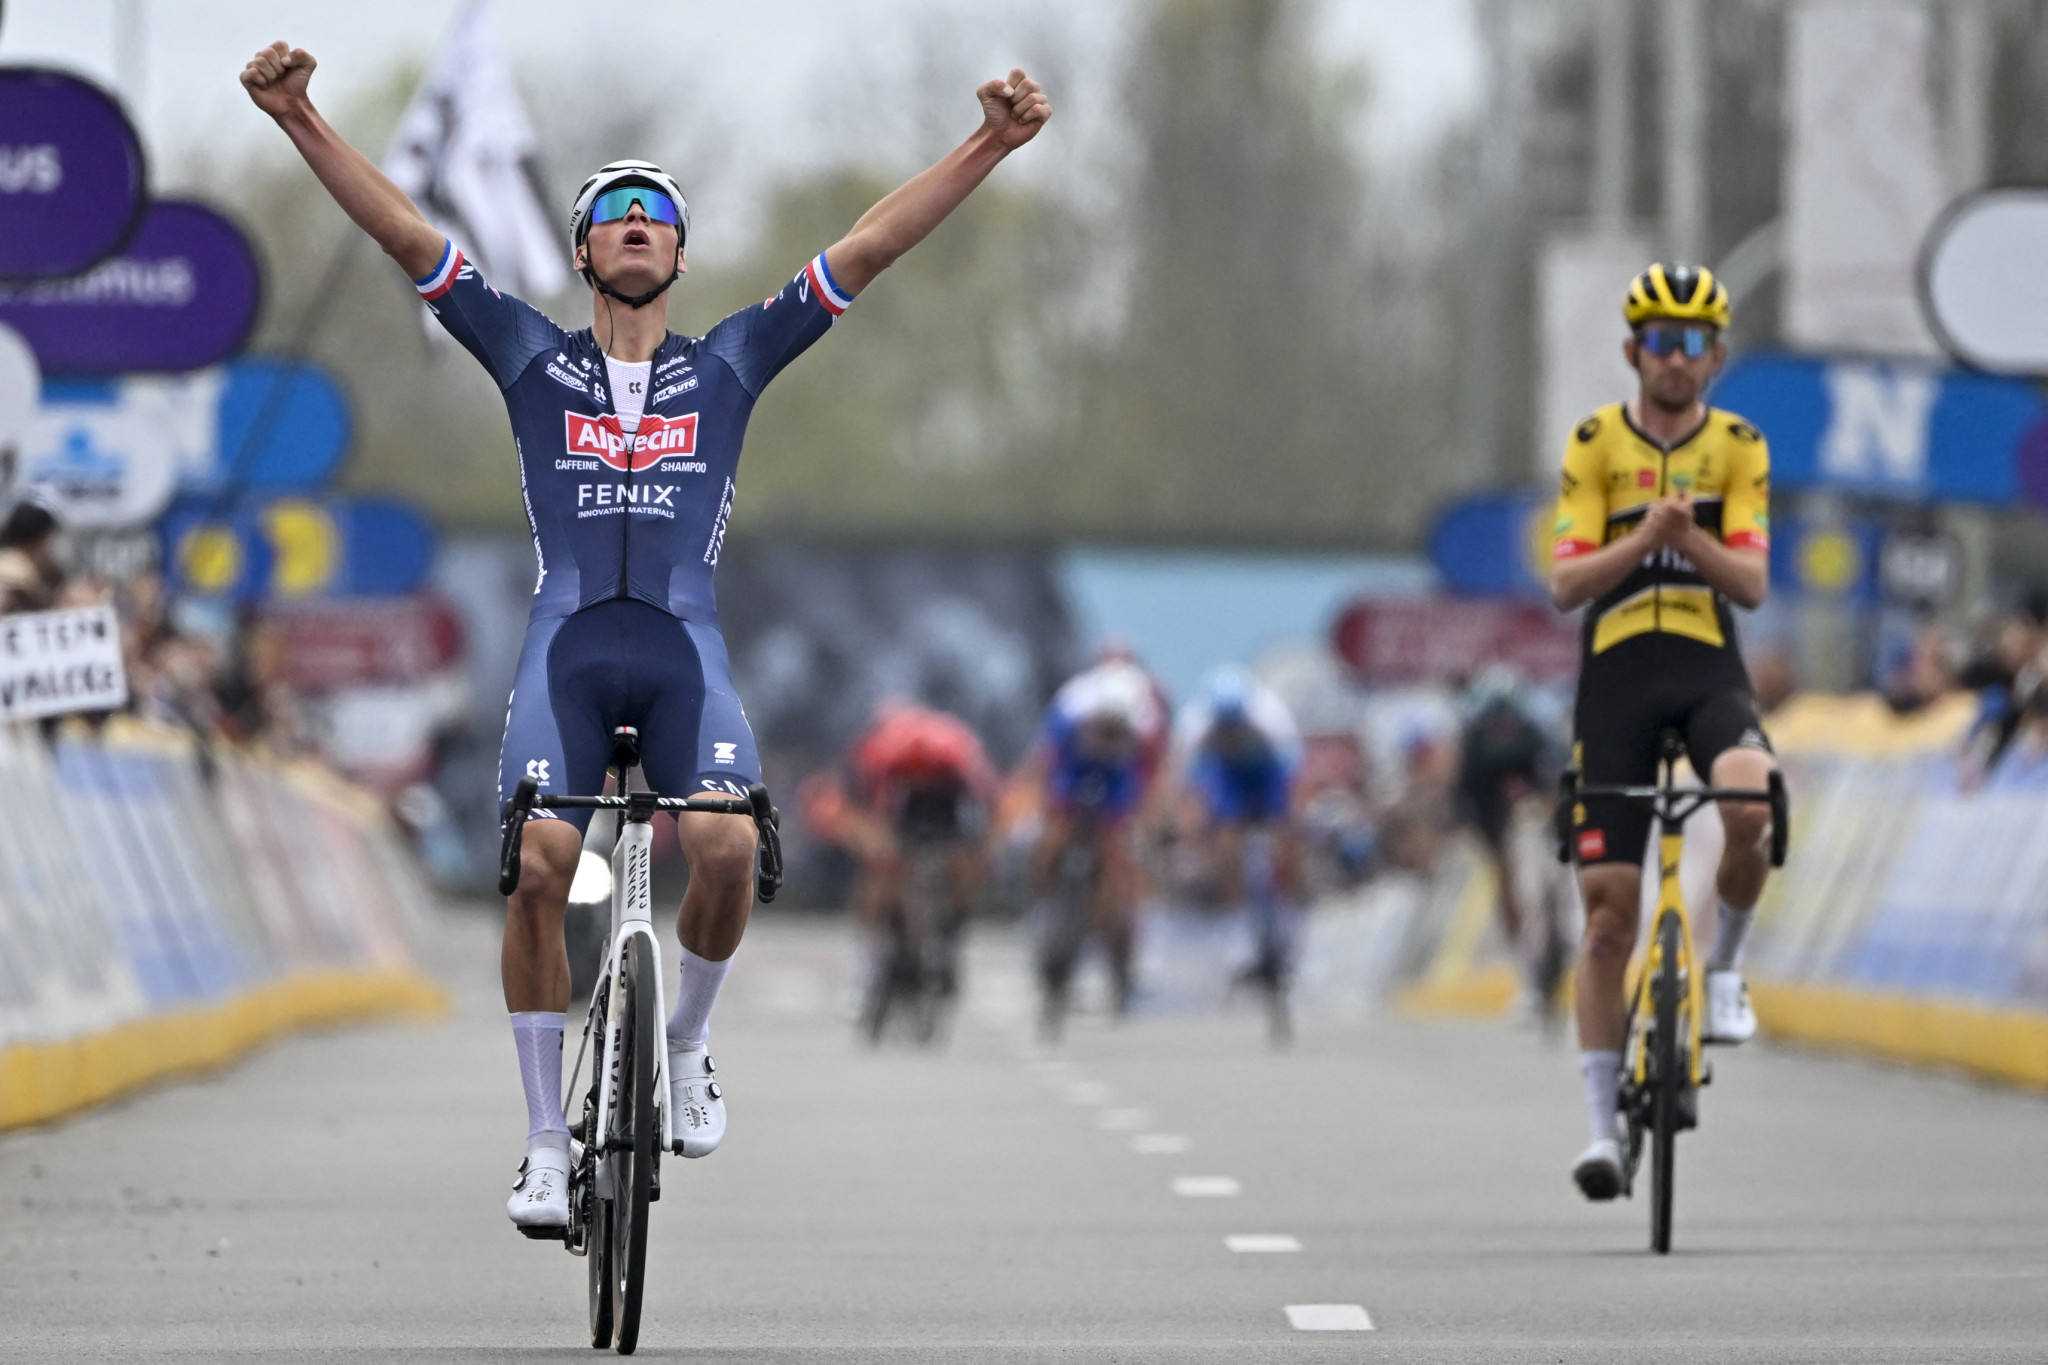 Mathieu van der Poel won Dwars door Vlaanderen for the second time in his career ©Getty Images